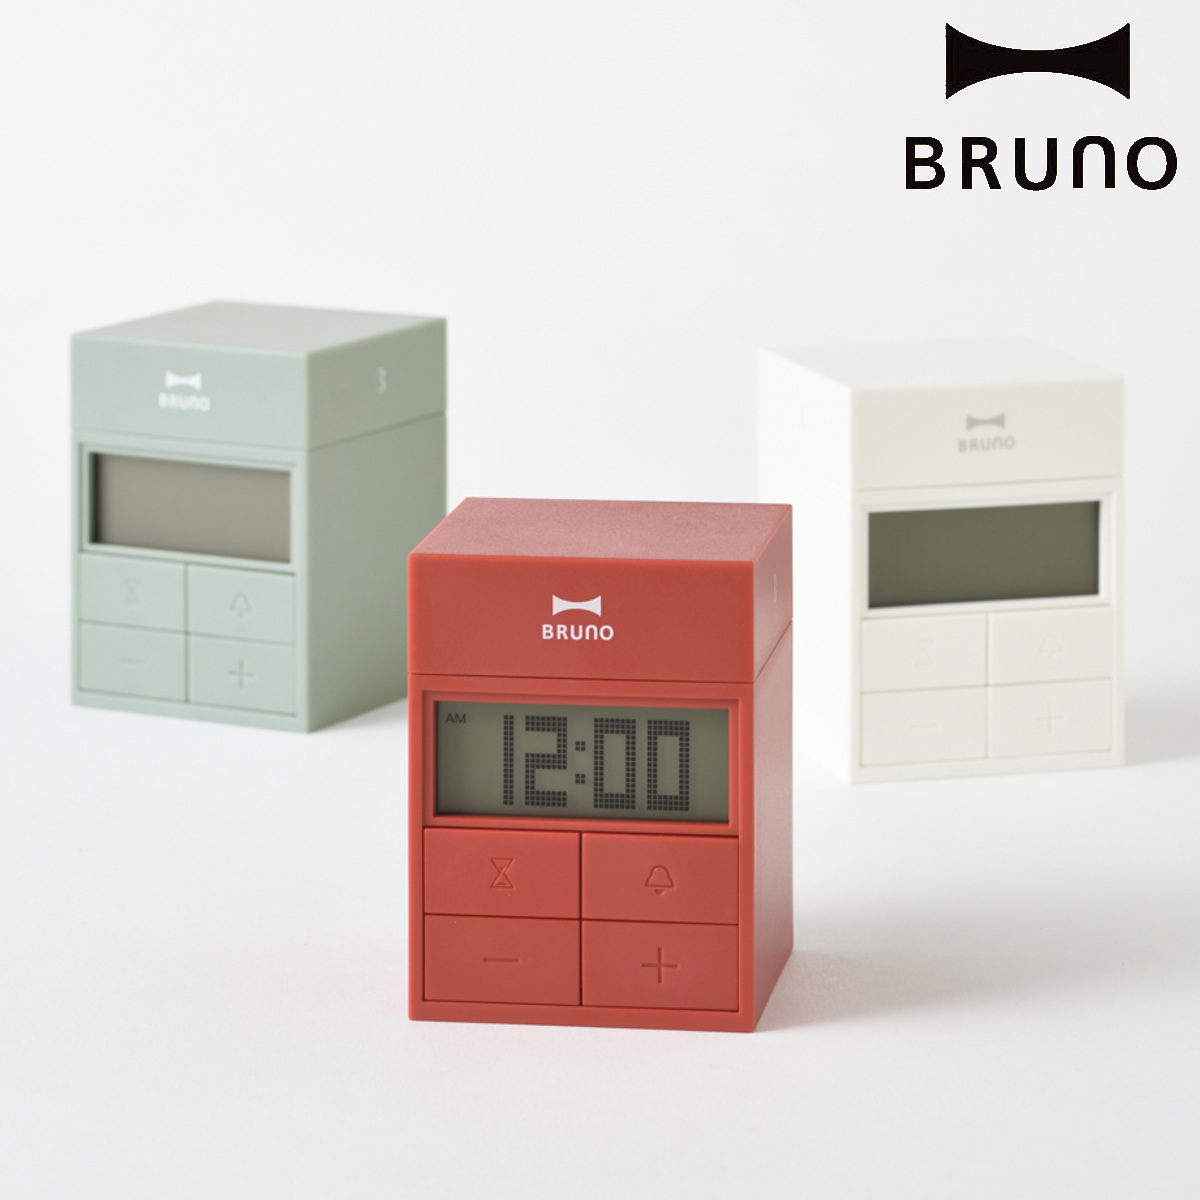 BRUNO デジタル時計 キューブタイマークロック タイマー